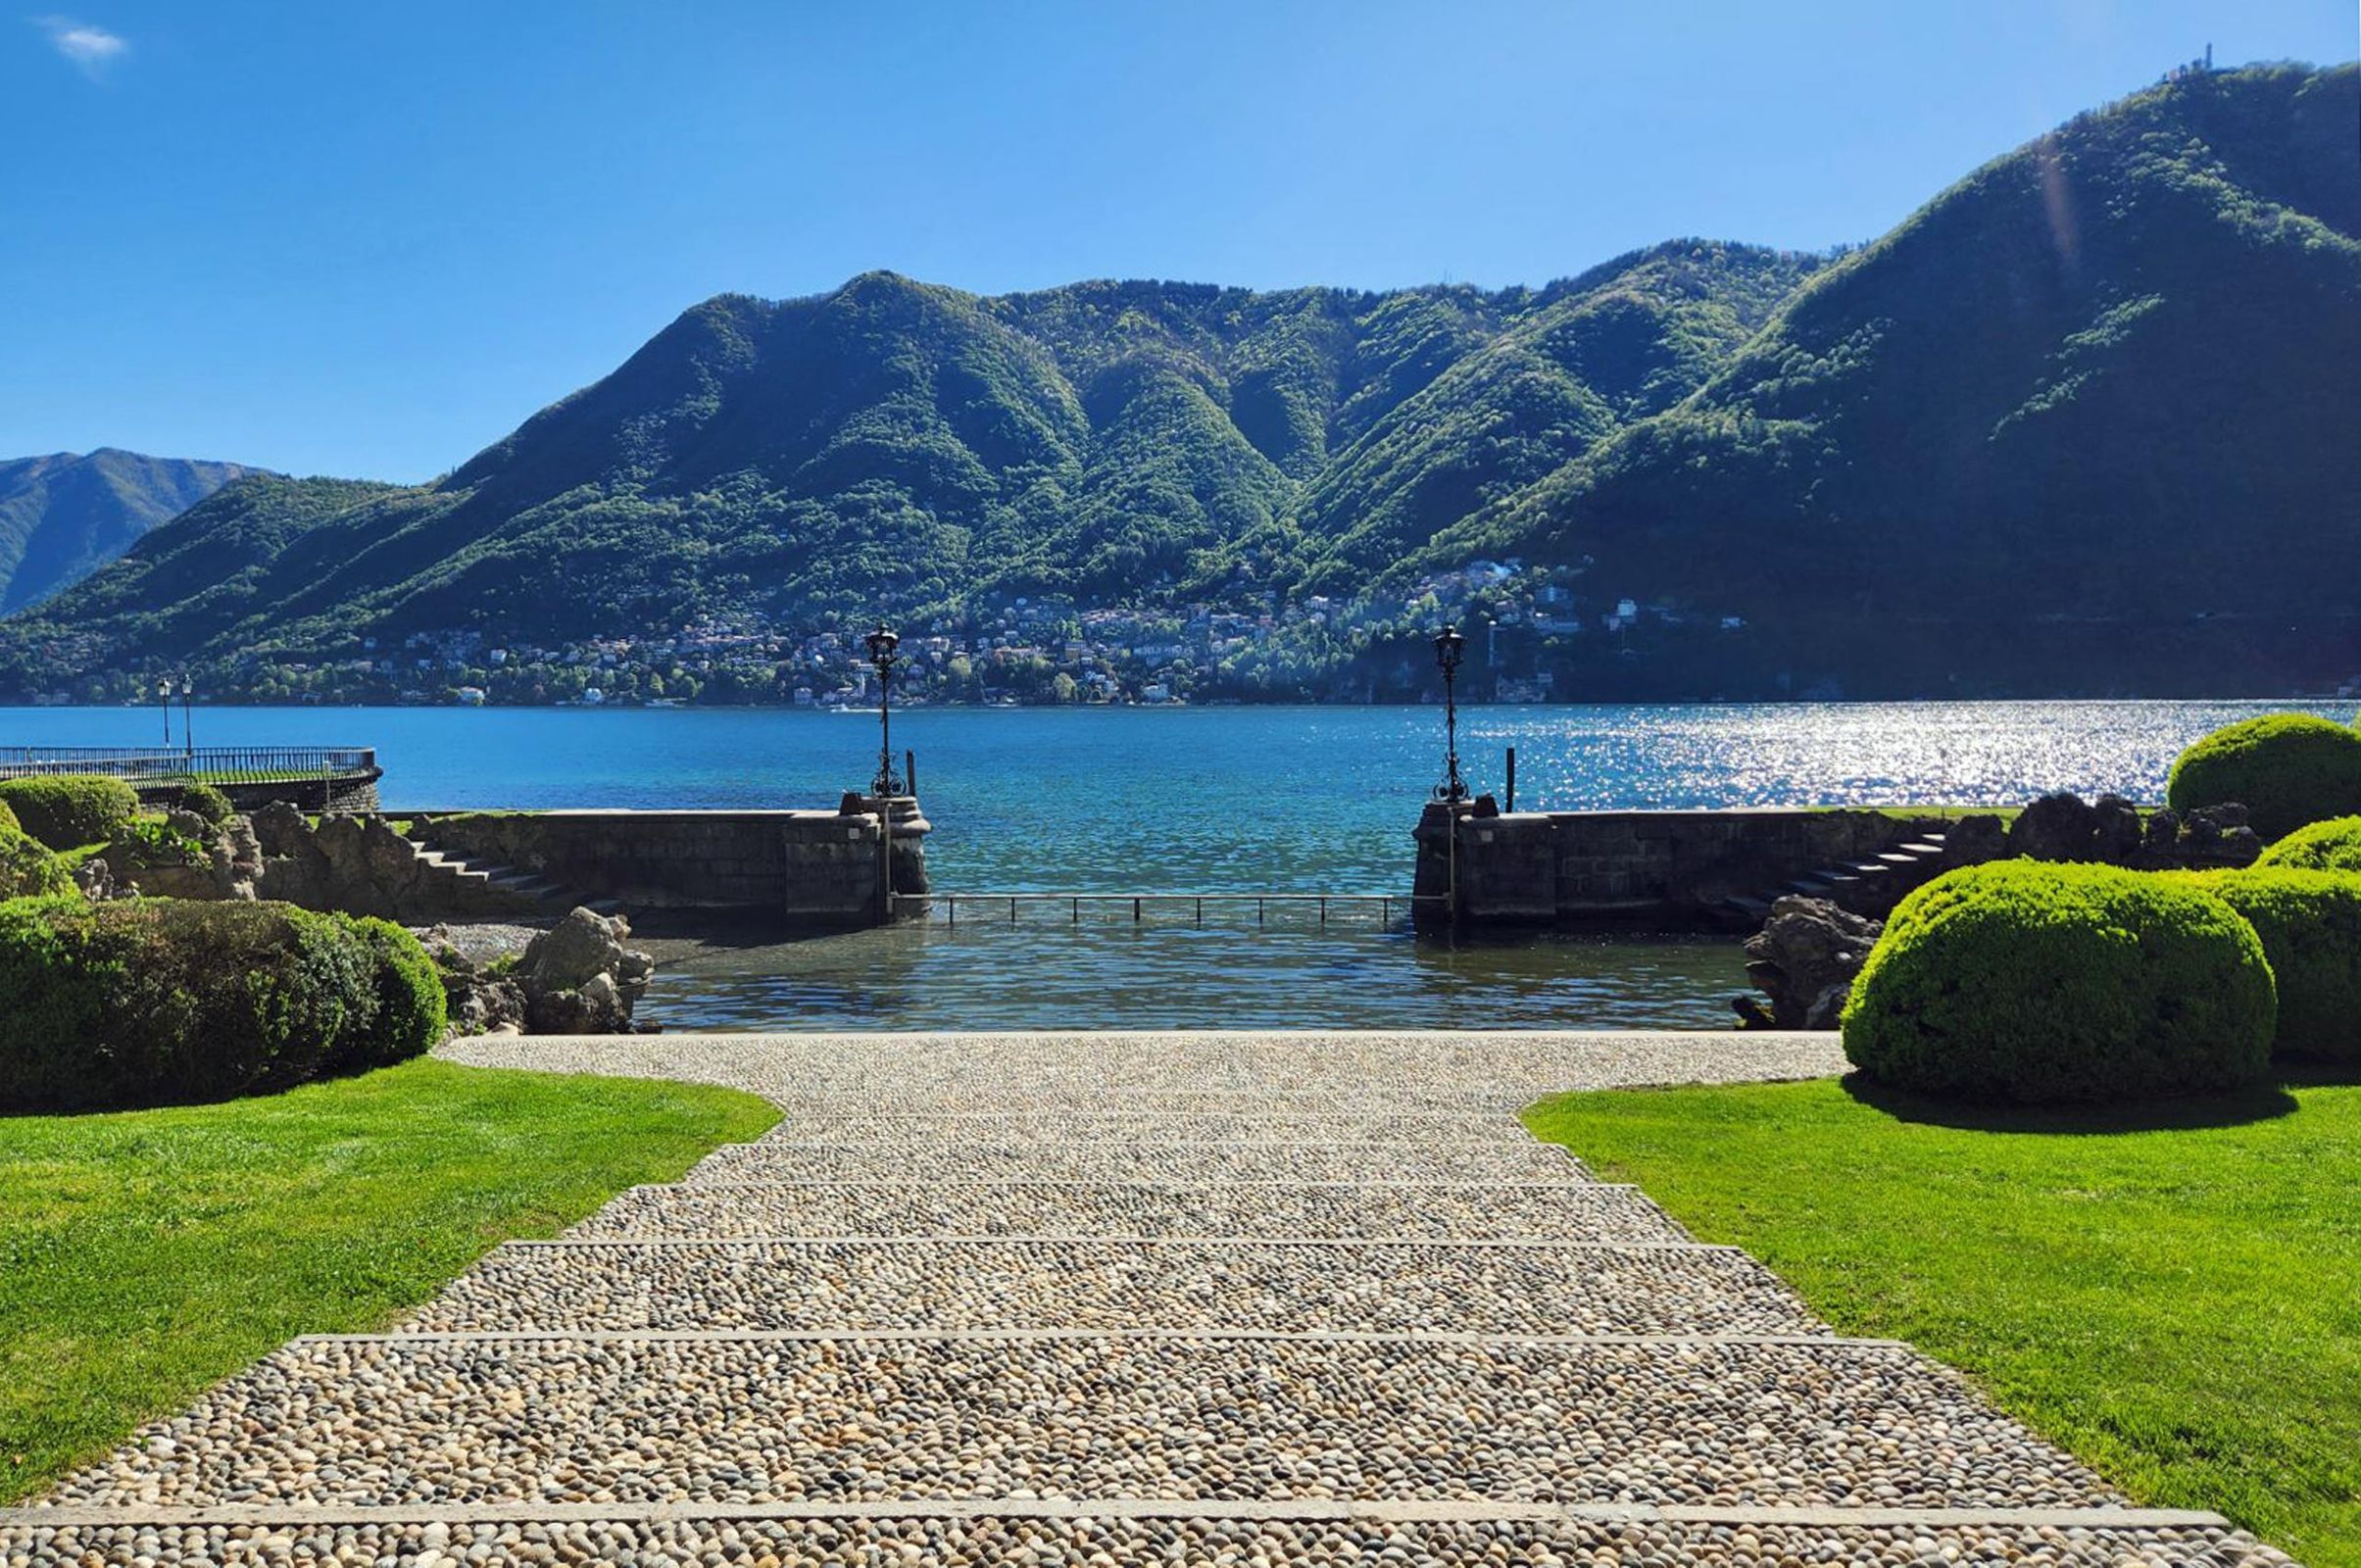 Villa Erba | Lake Como, Italy | The Grand Hotel Tremezzo